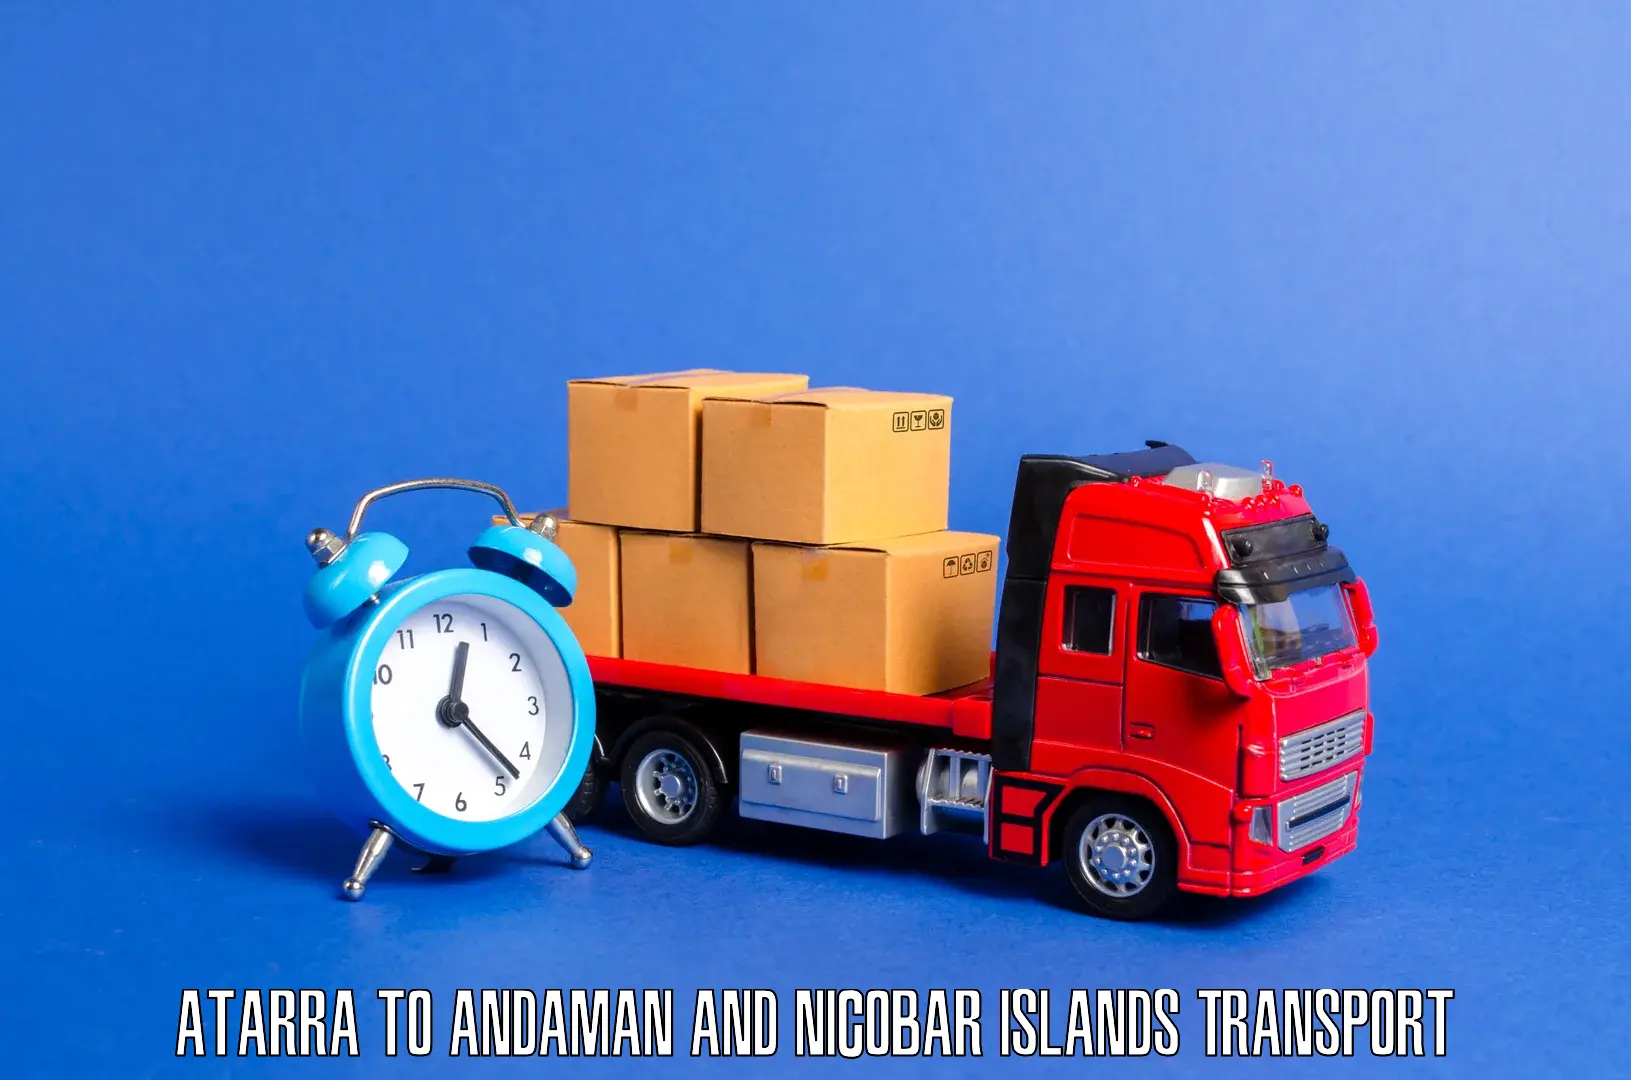 Land transport services Atarra to Andaman and Nicobar Islands